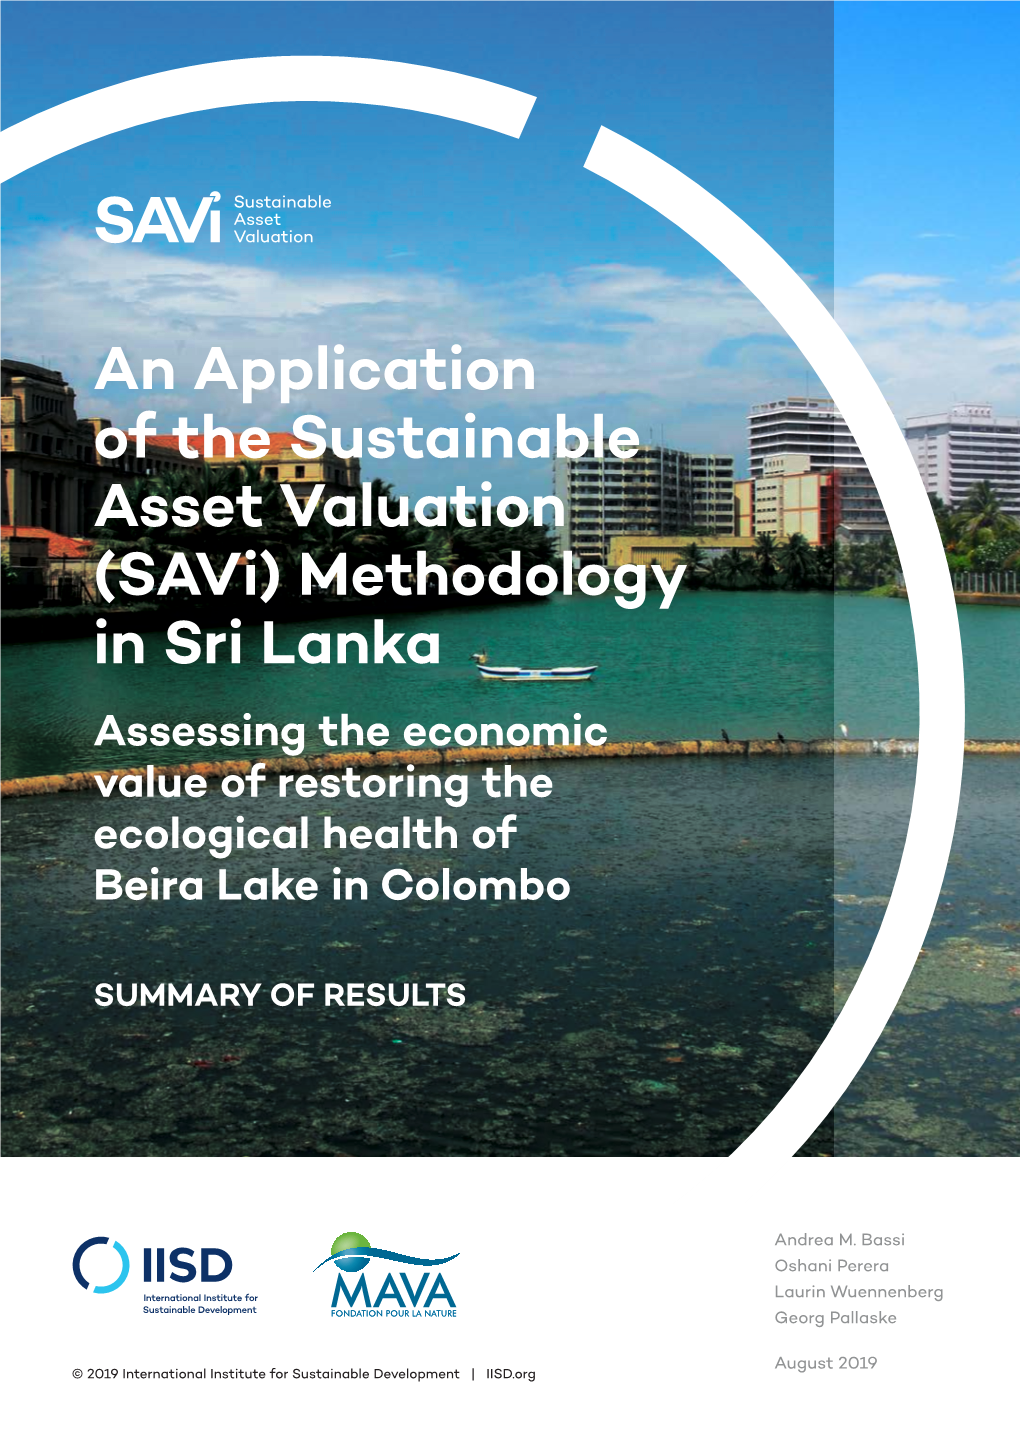 (Savi) Methodology in Sri Lanka Assessing the Economic Value of Restoring the Ecological Health of Beira Lake in Colombo